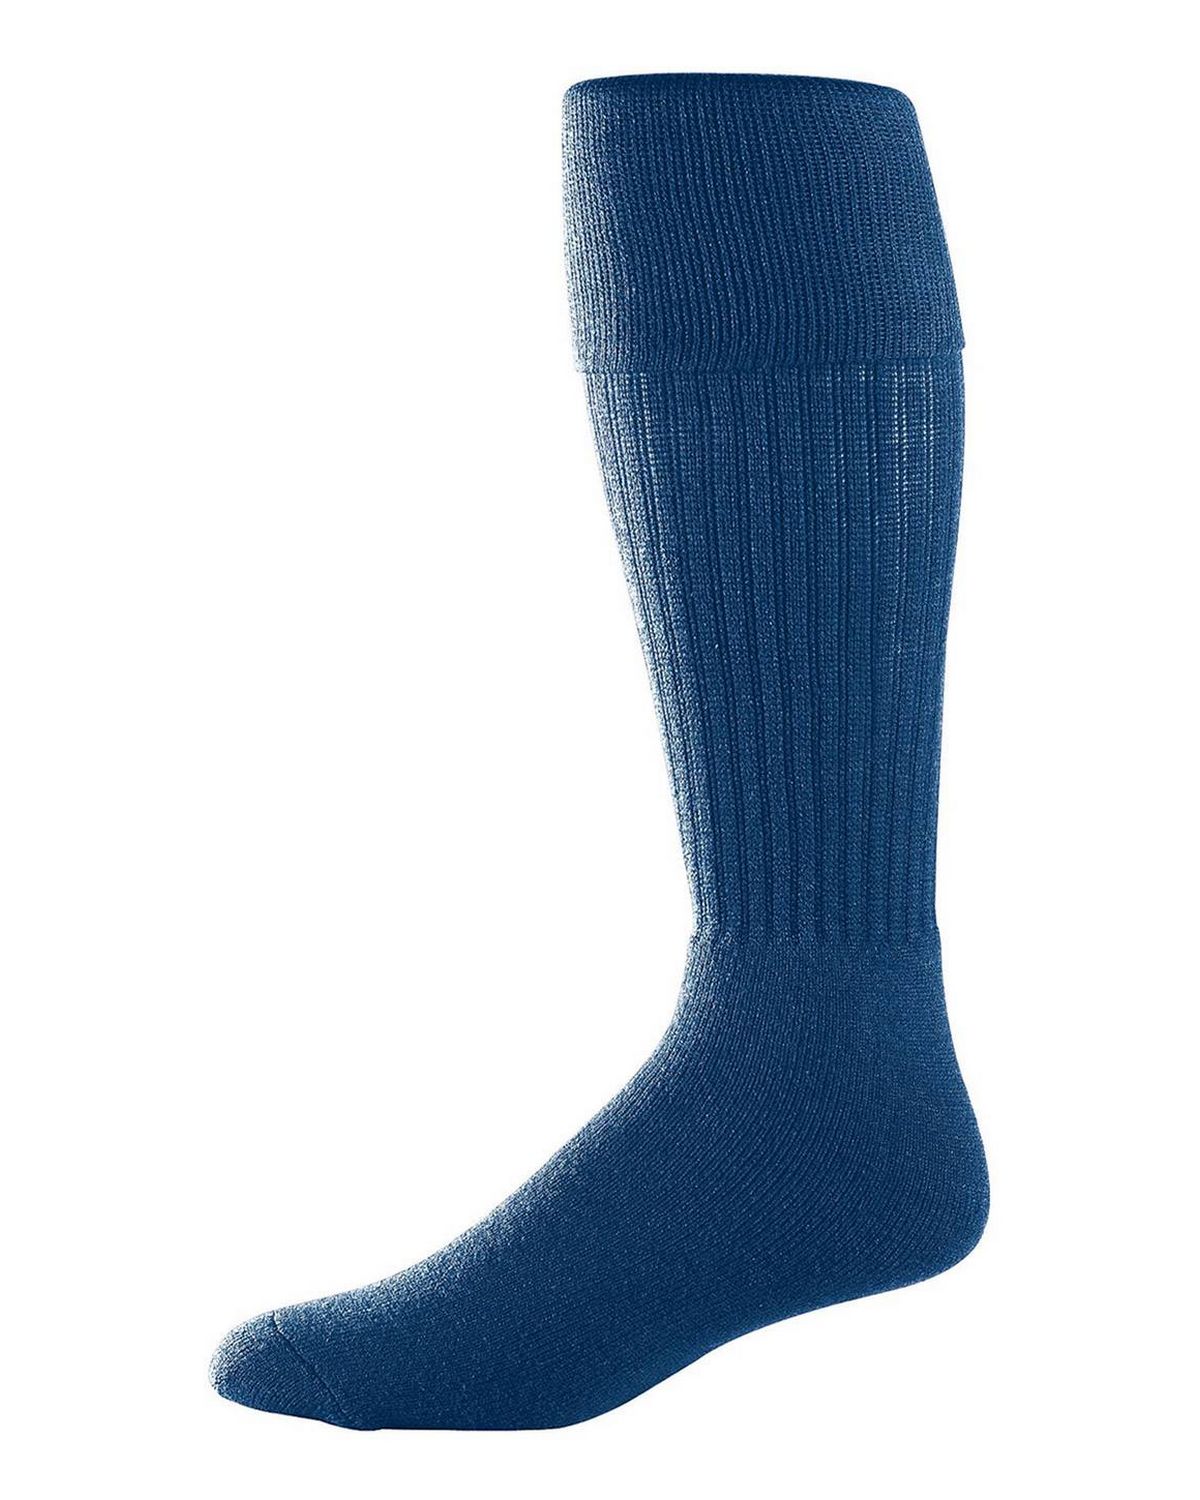 Buy Augusta Sportswear 6031 Youth Size Soccer Sock